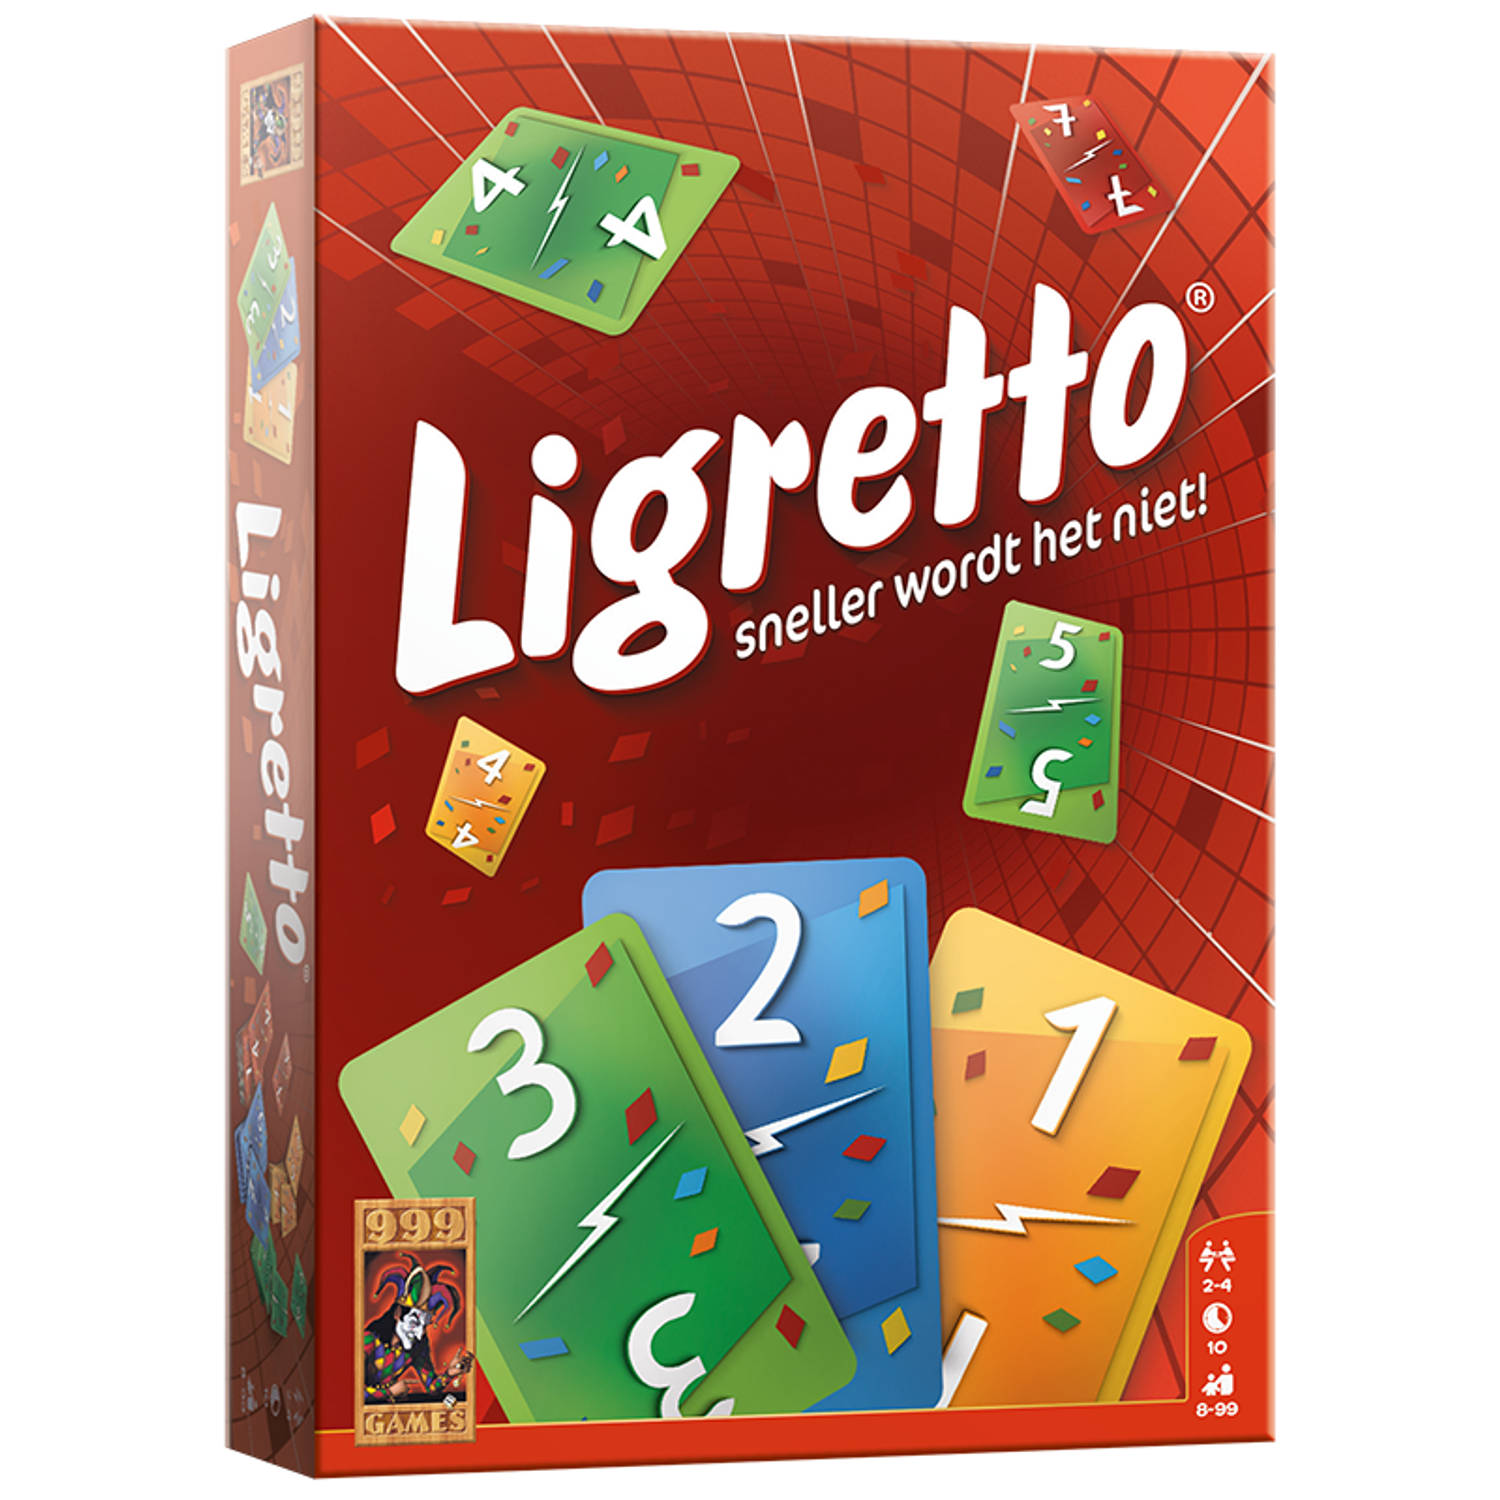 Ligretto rood | Blokker